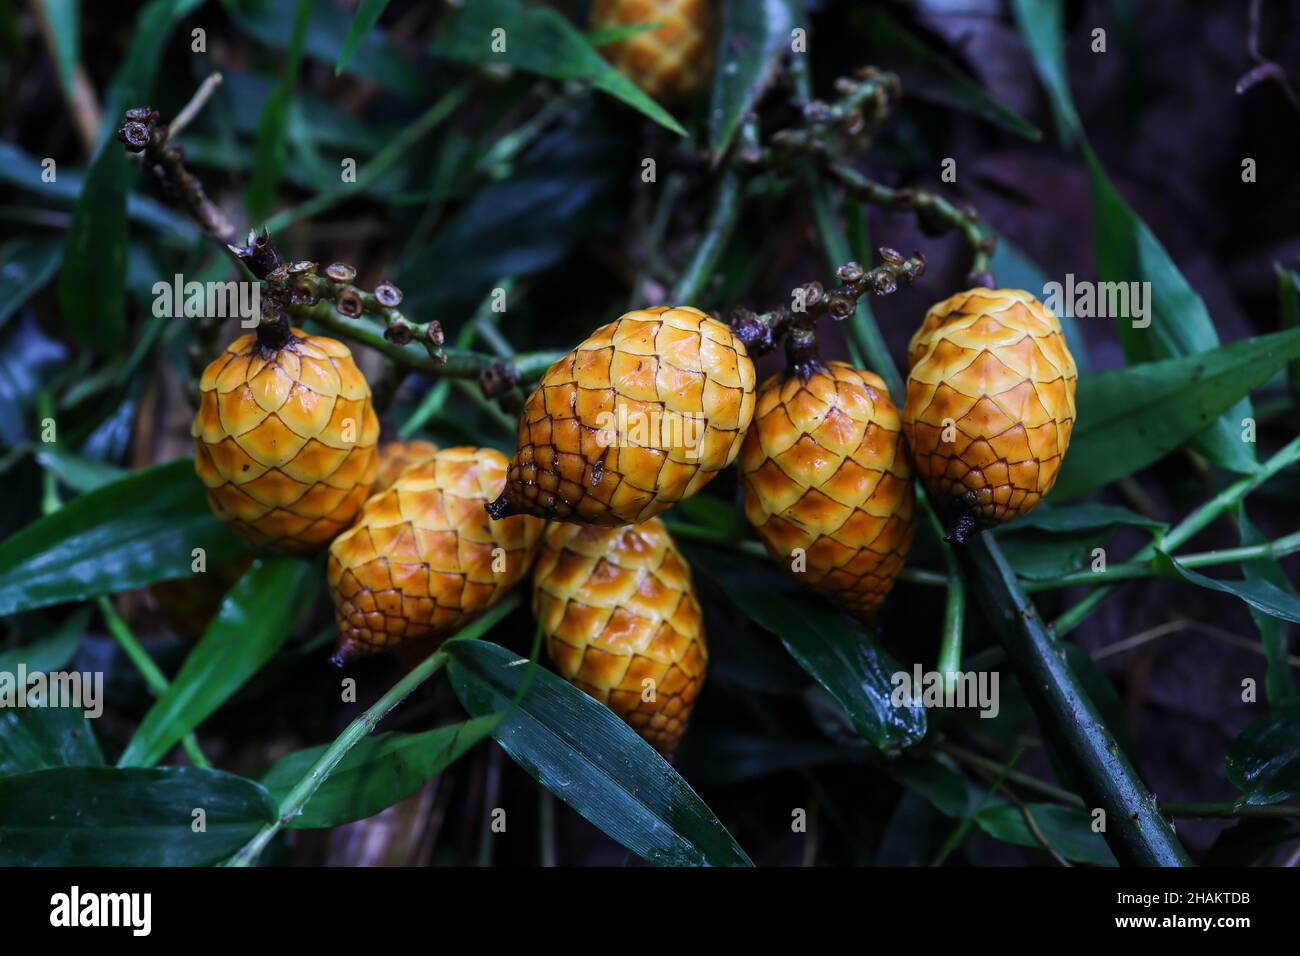 Fruta comestible de piel de serpiente silvestre en una selva tropical Foto de stock